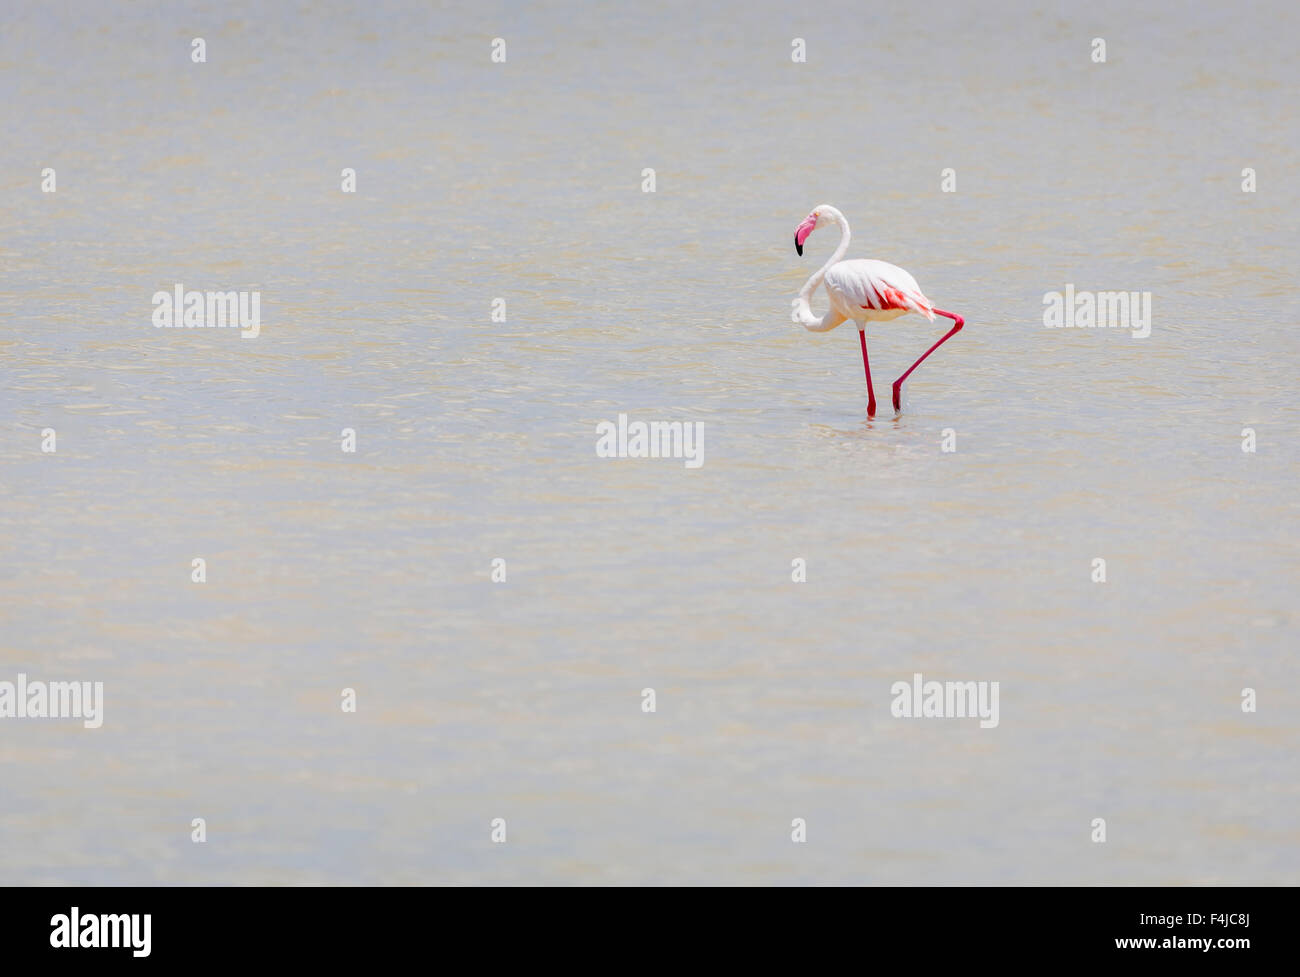 Flamingo dans l'eau, Twyfelfontein Country Lodge, Namibie, Afrique Banque D'Images